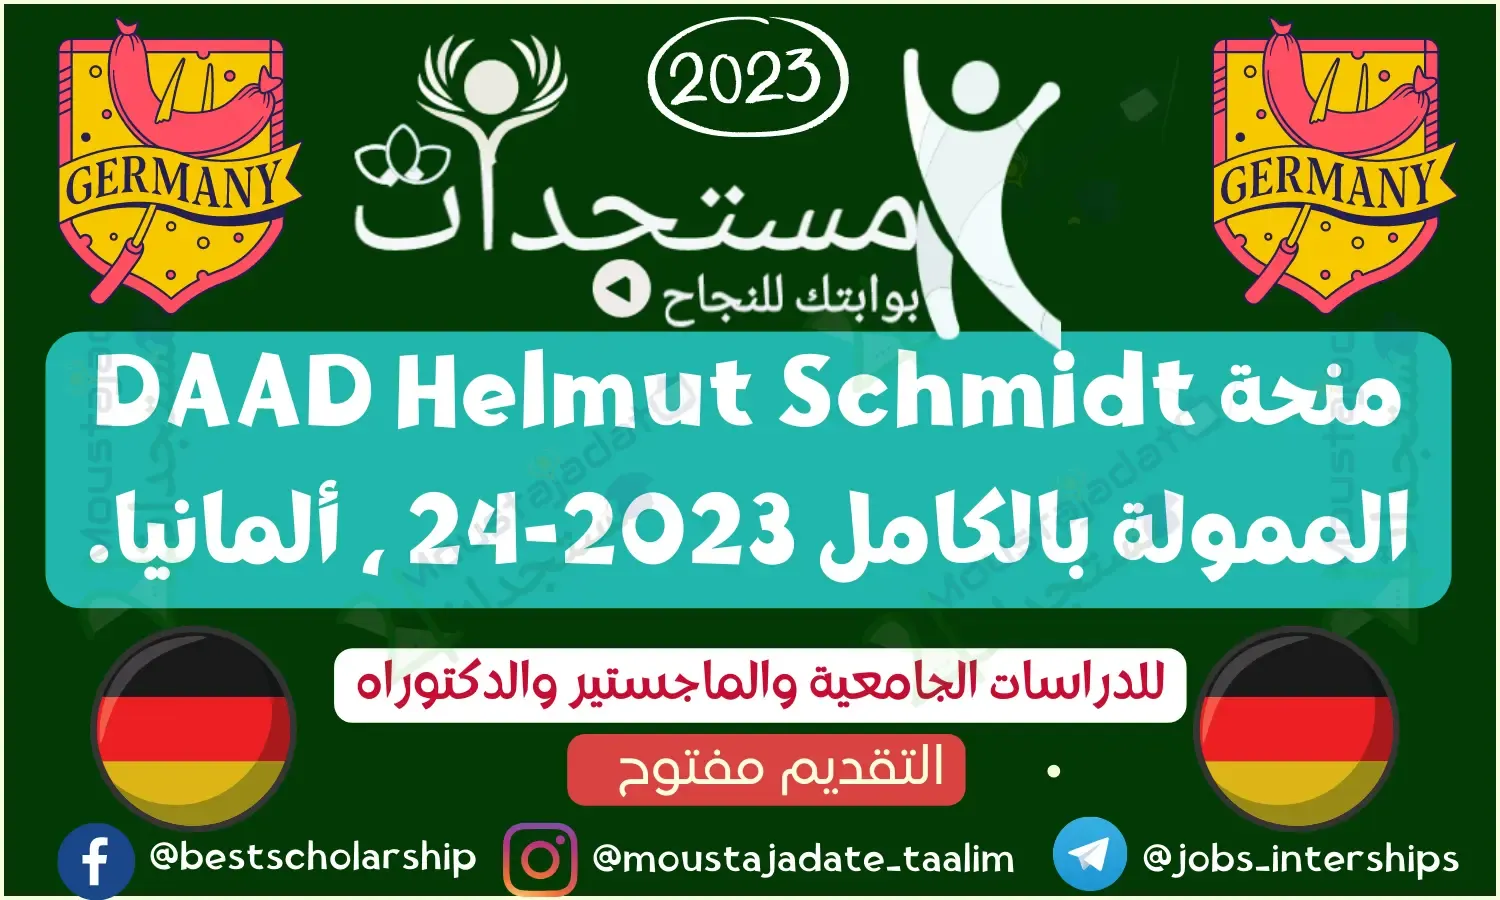 منحة DAAD Helmut Schmidt الممولة بالكامل 2023-24 ، ألمانيا.